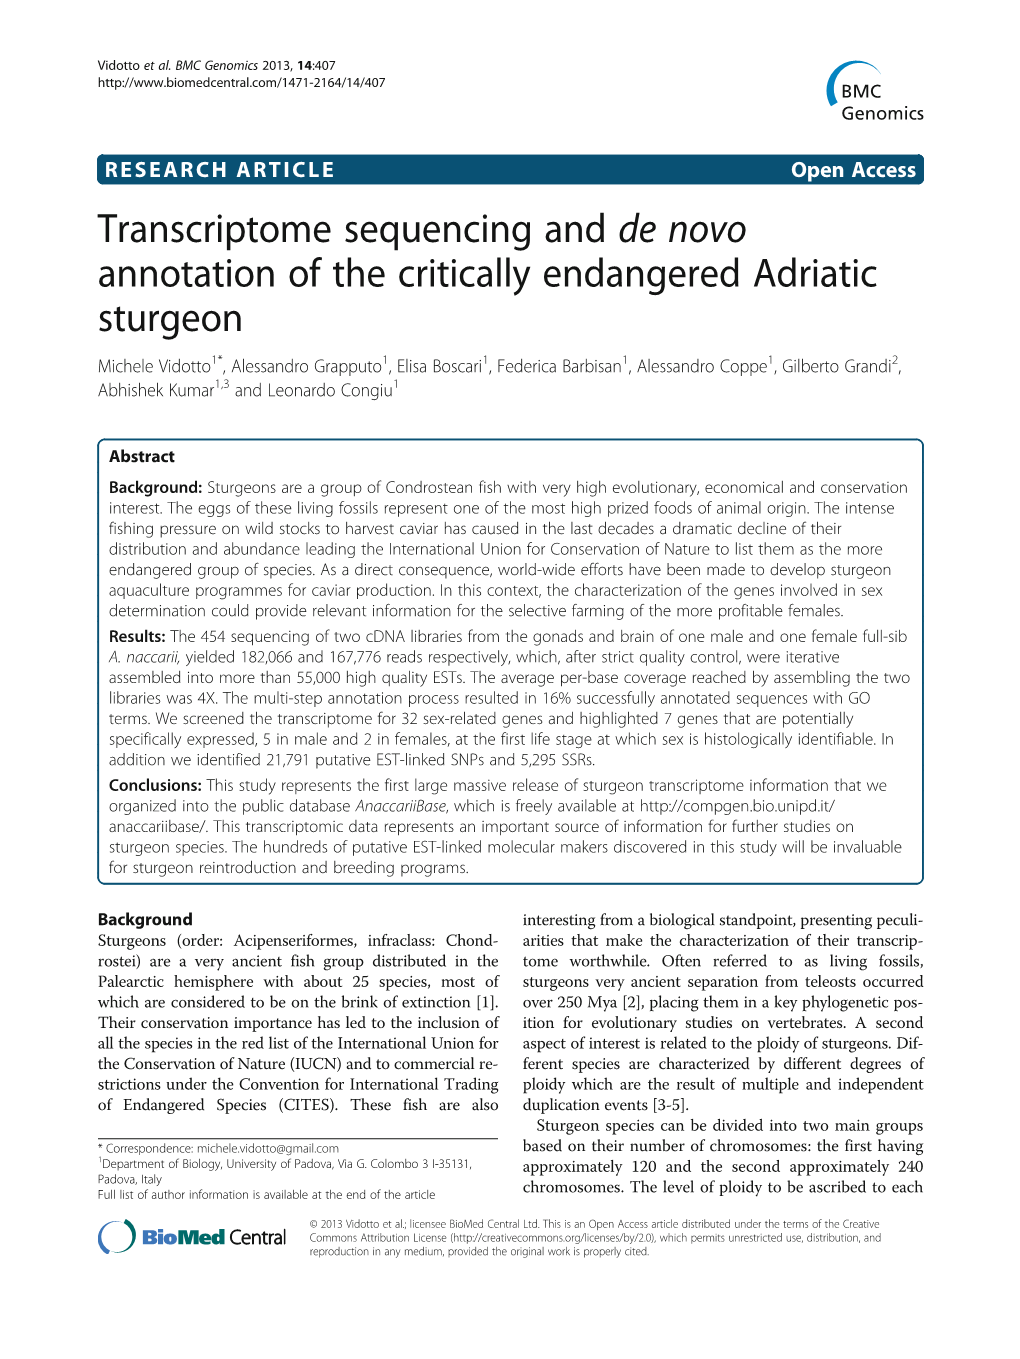 Transcriptome Sequencing and De Novo Annotation of the Critically